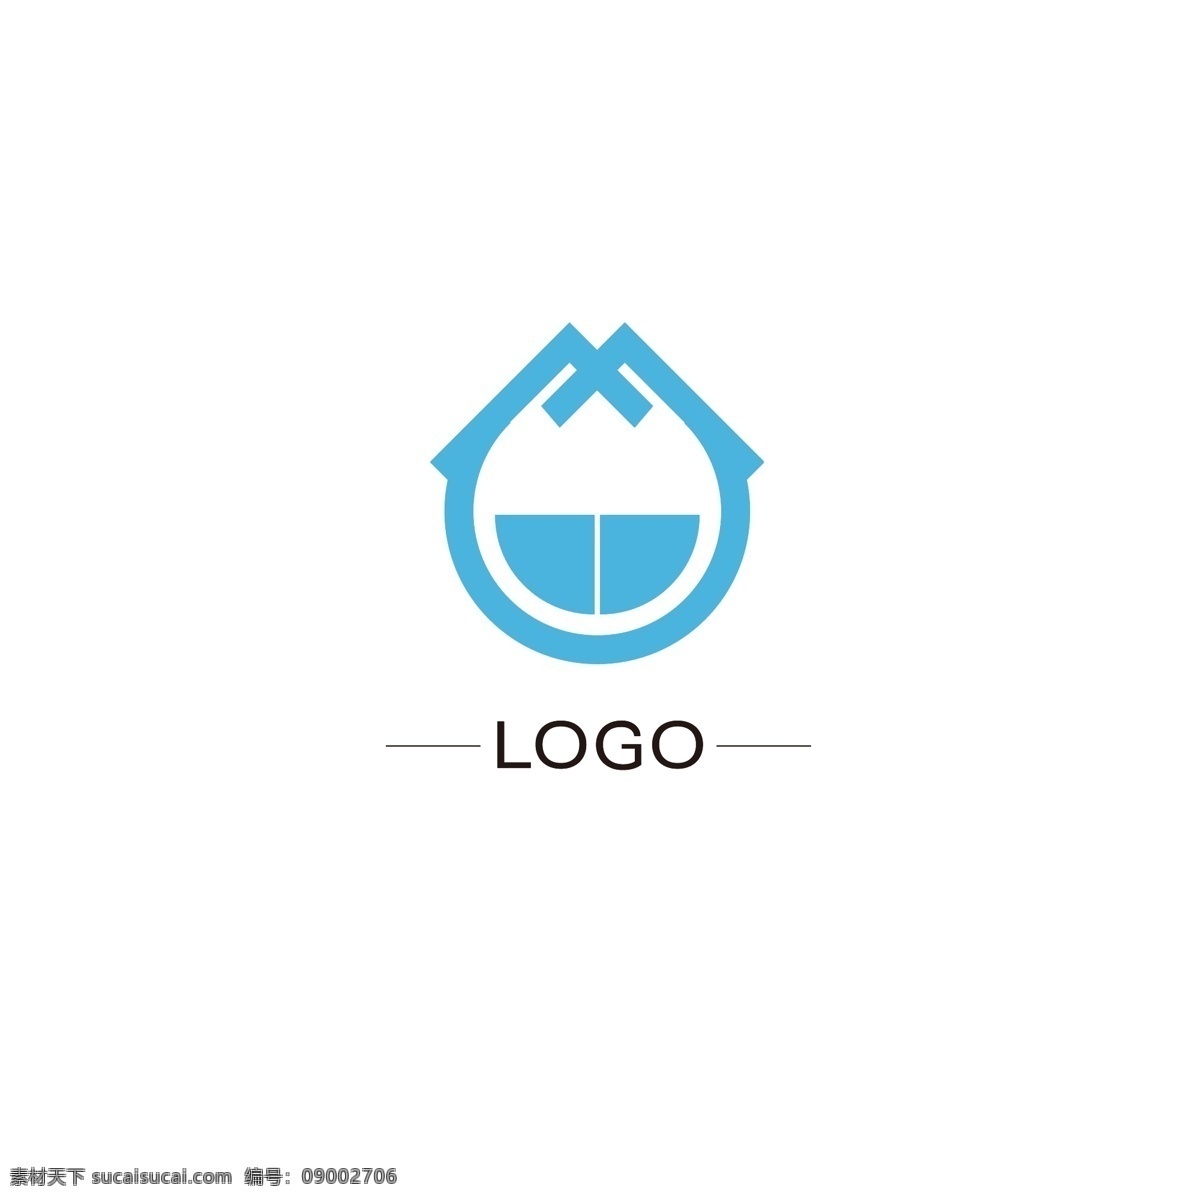 原创 通用 logo 企业 教育 品牌 标识设计 标识 ai矢量